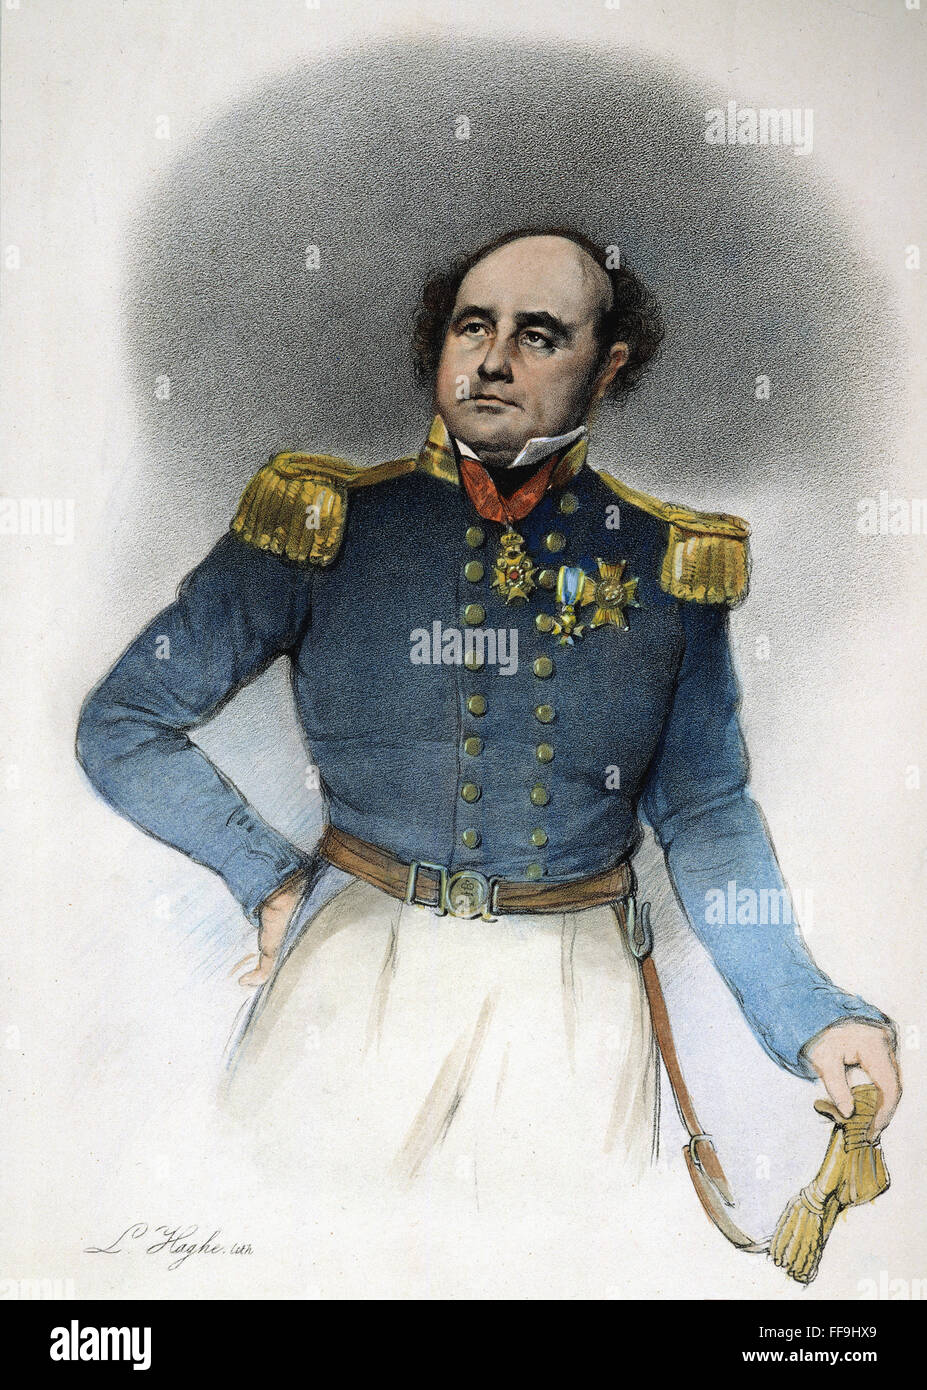 SIR JOHN FRANKLIN/n(1786-1847). Englische Marineoffizier und Polarforscher. Lithographie, 19. Jahrhundert. Stockfoto